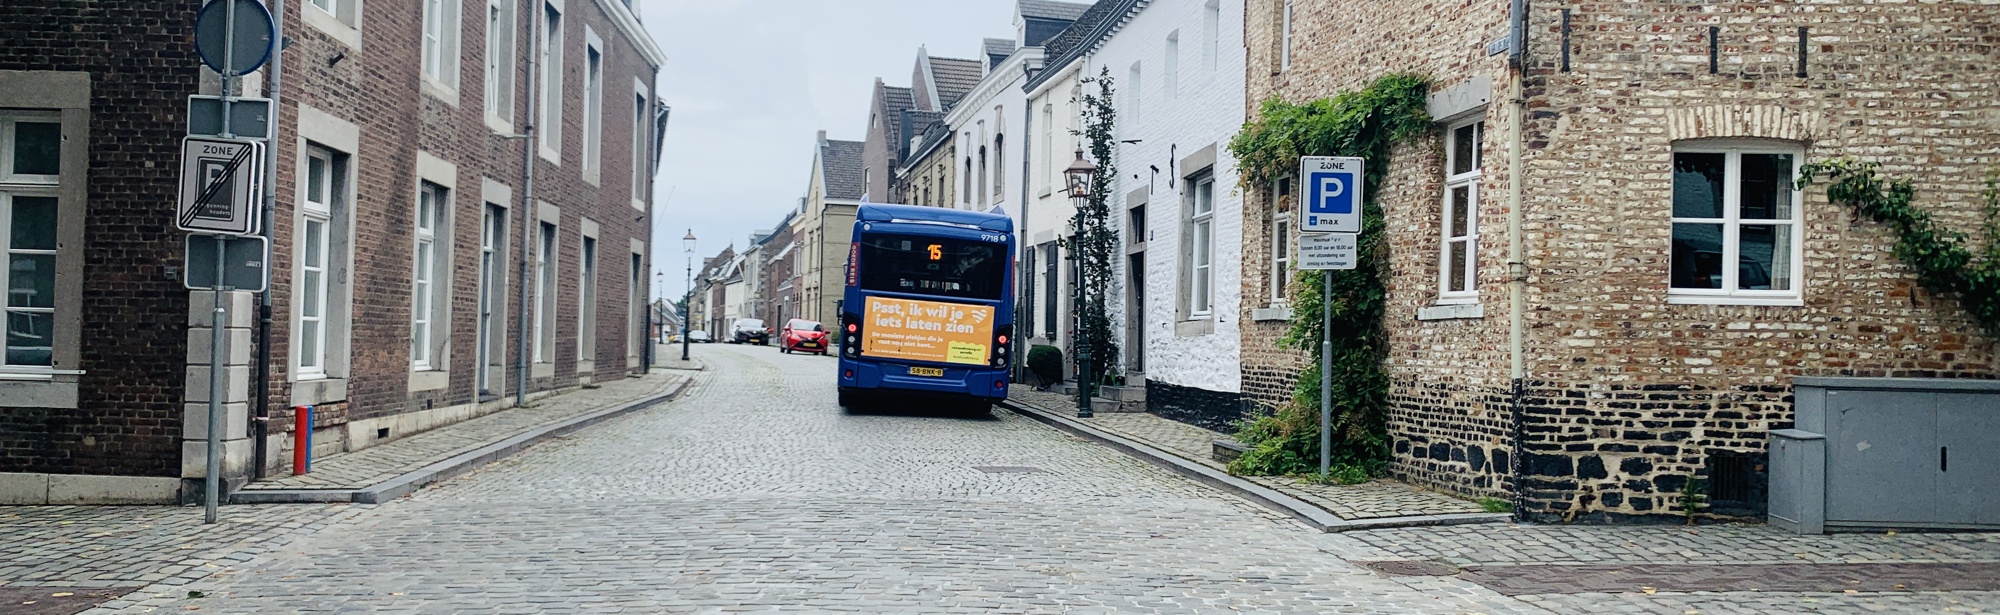 De Arriva Bus Met Tekst Van Visit Zuid-Limburg In Eijsden